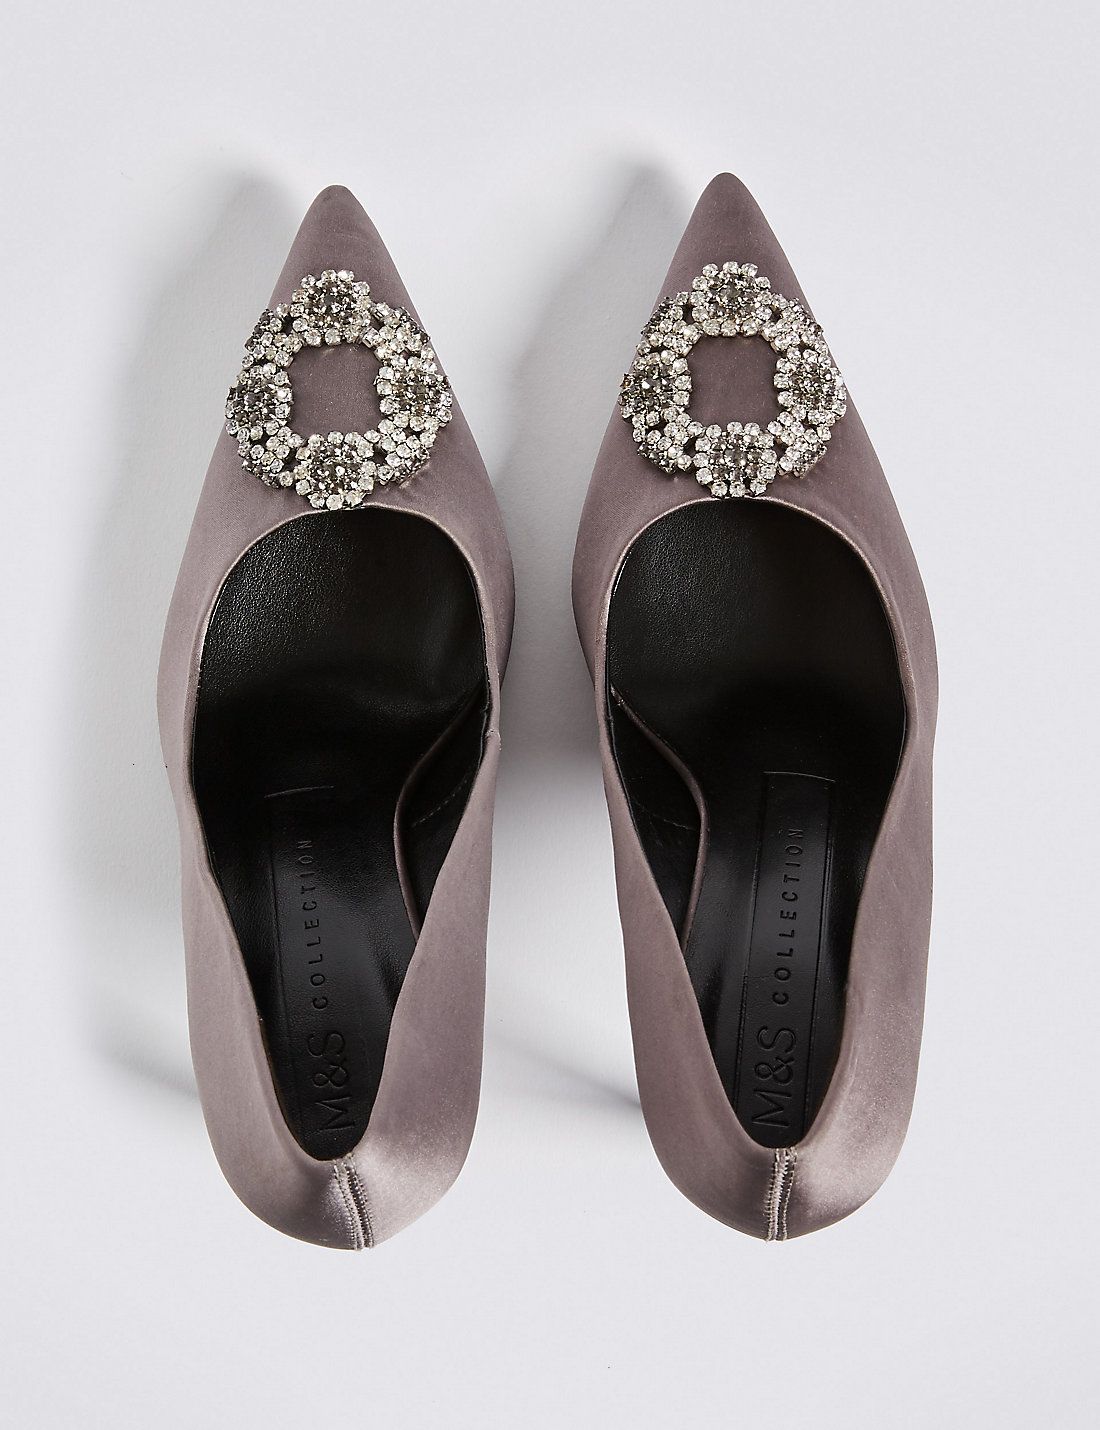 manolo blahnik inspired heels